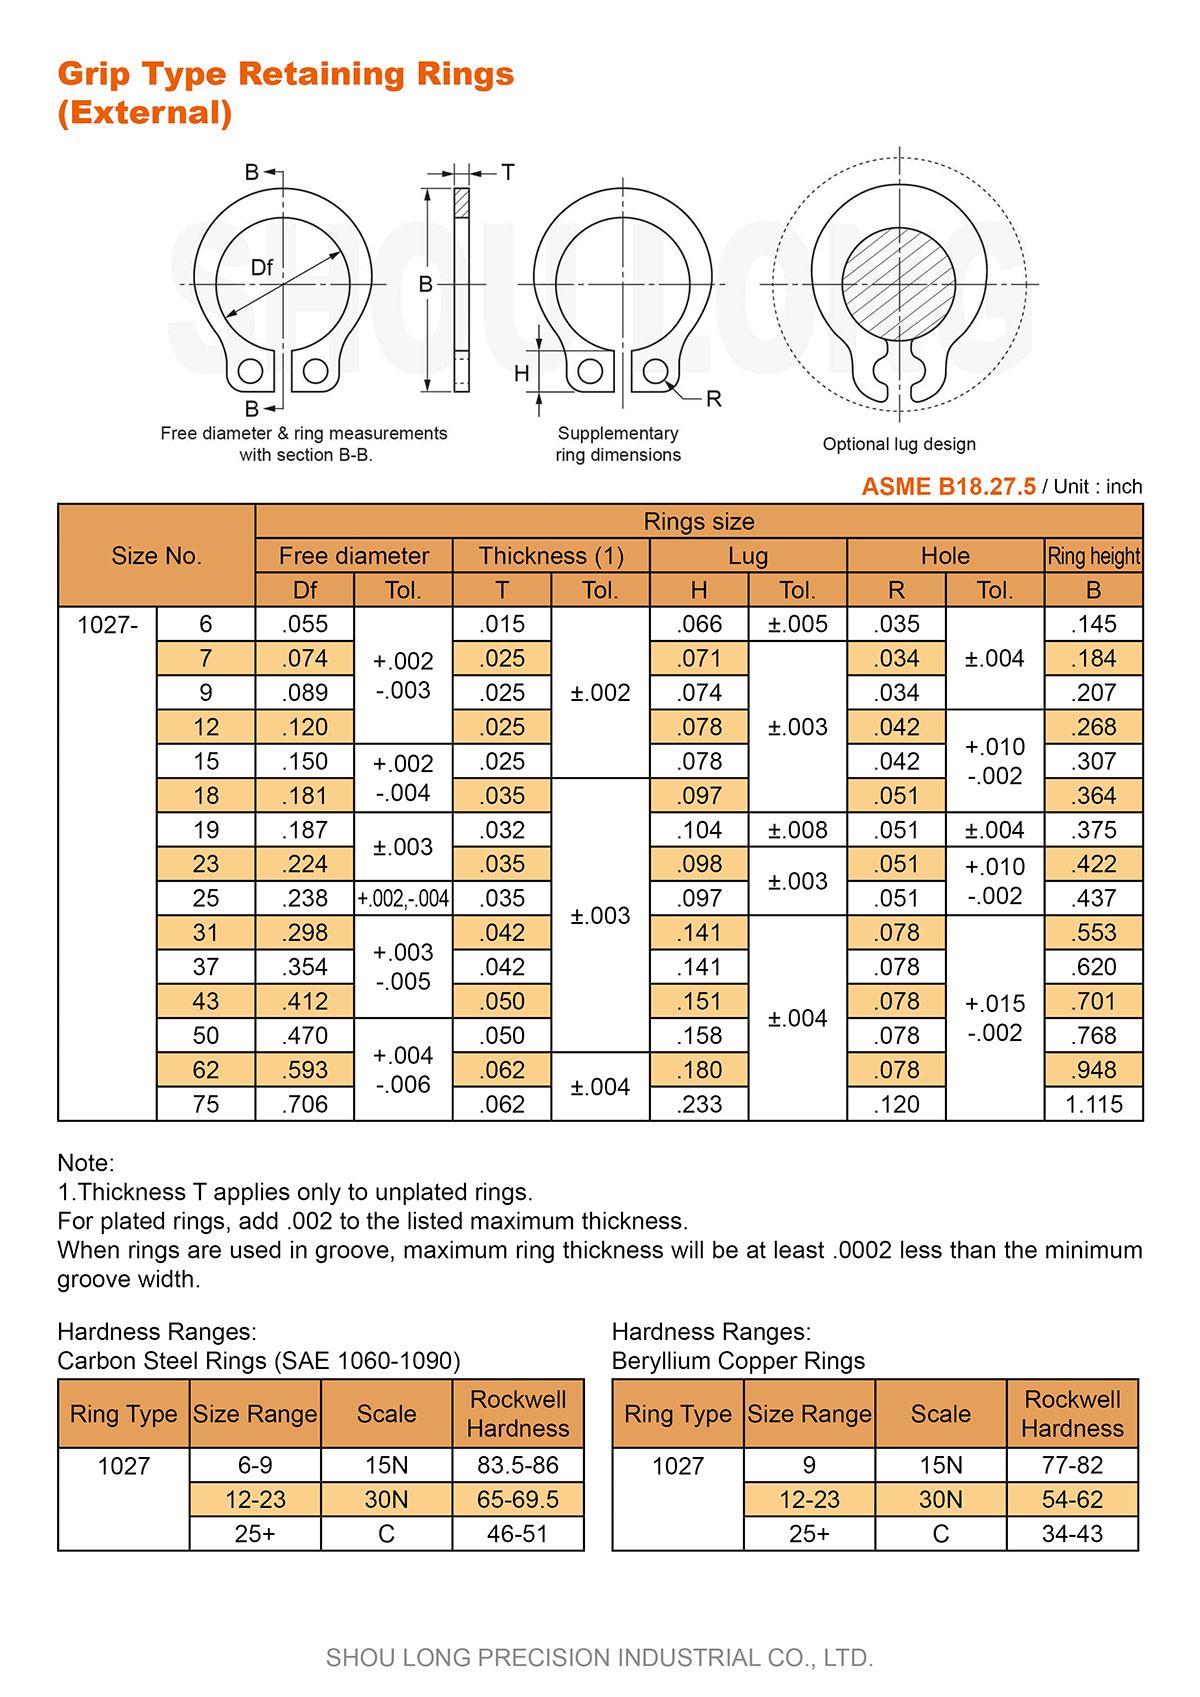 Specifiche degli anelli di trattenimento di tipo Grip Inch per albero ASME/ANSI B18.27.5